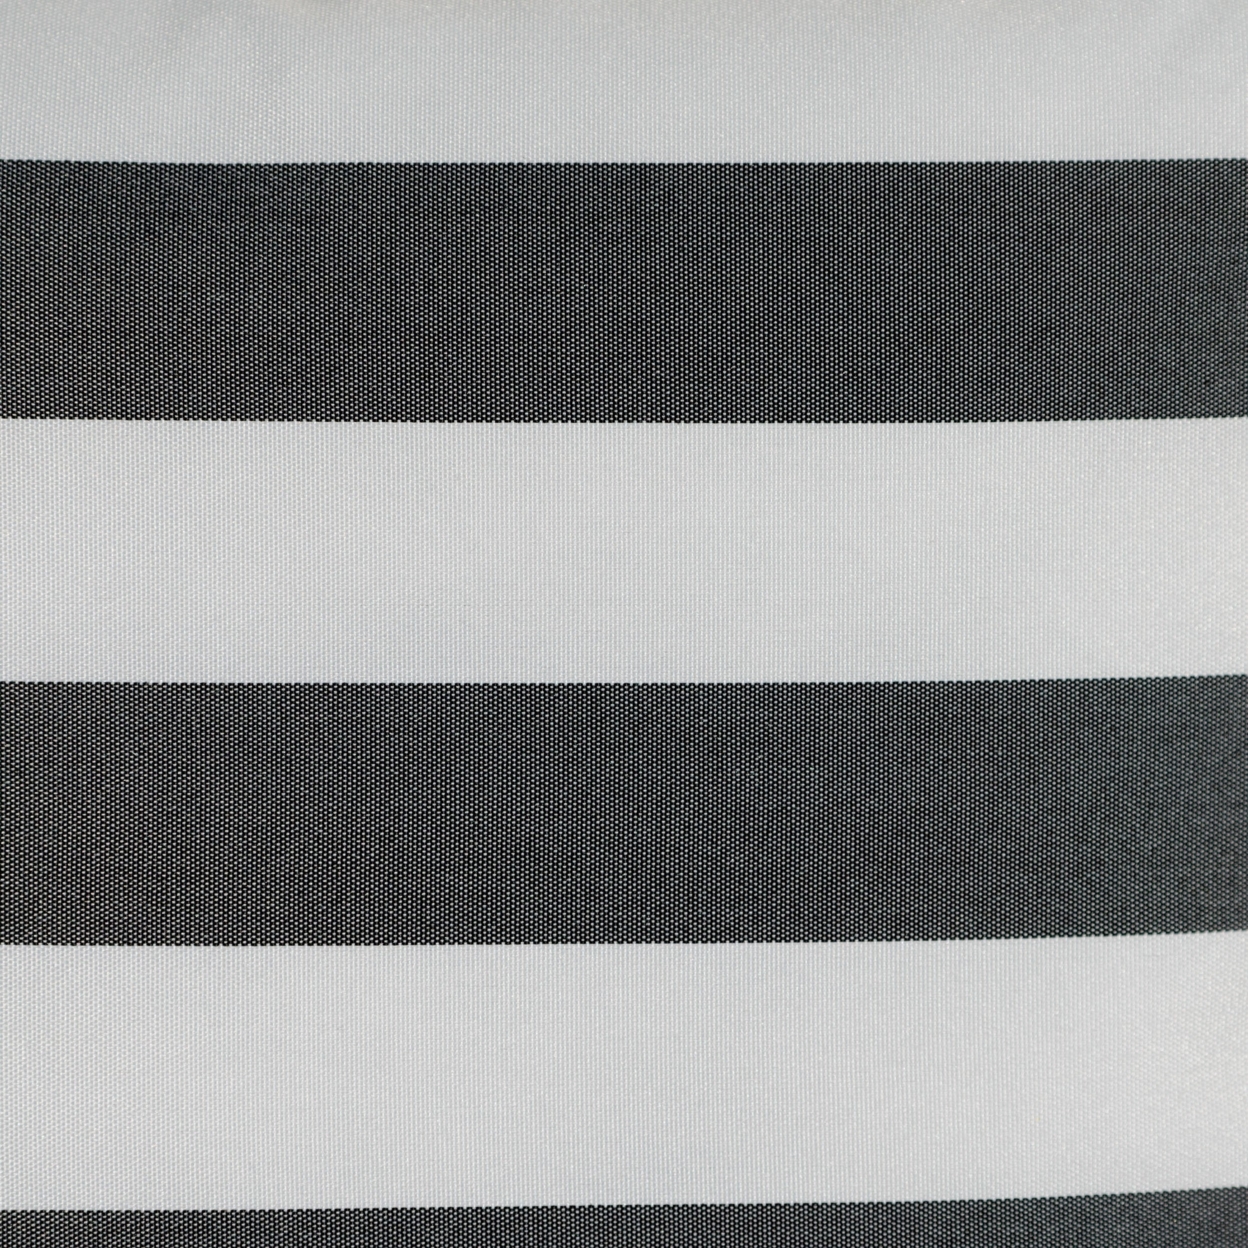 Coronado Outdoor Stripe Water Resistant Square Throw Pillow - Black/white, Set Of 2